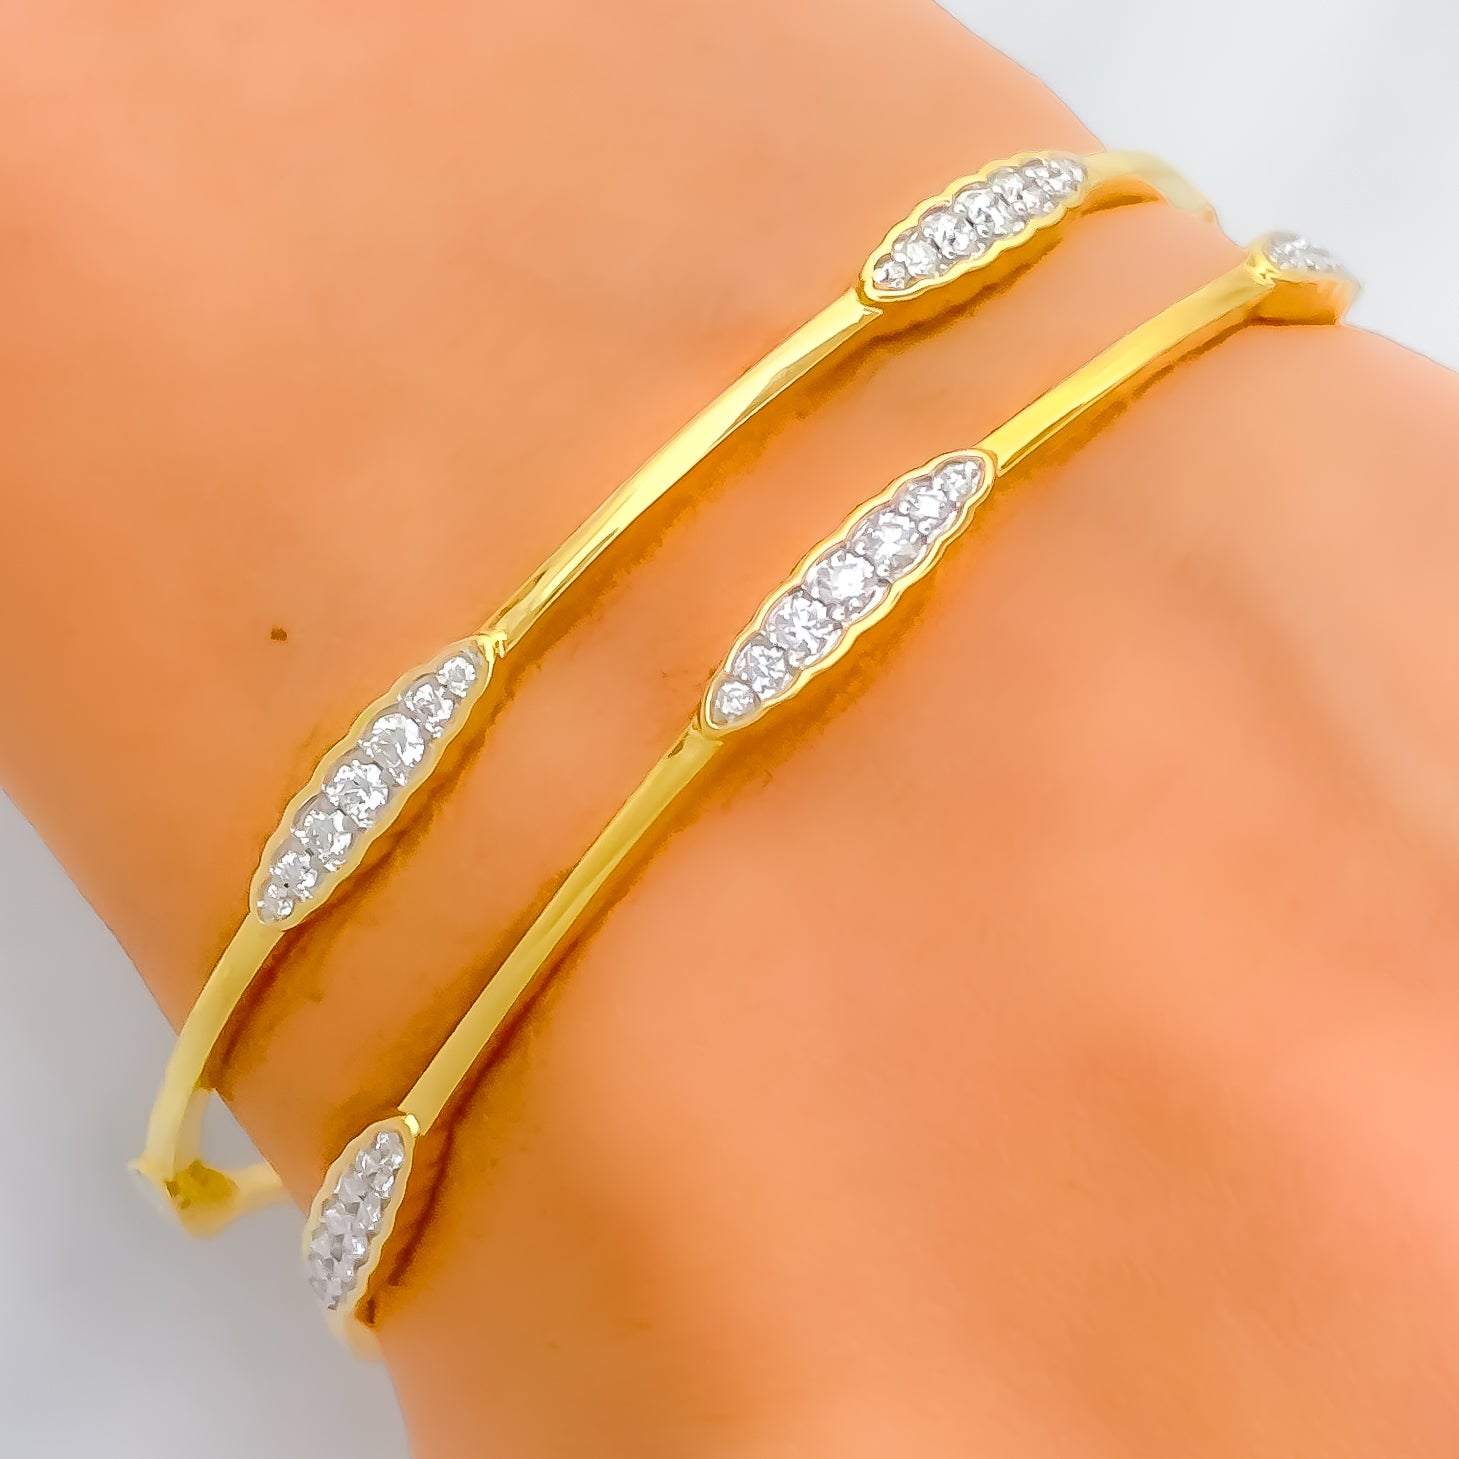 Simple gold bracelet for women | Gold bracelet for girl, Modern gold jewelry,  Gold bangles design